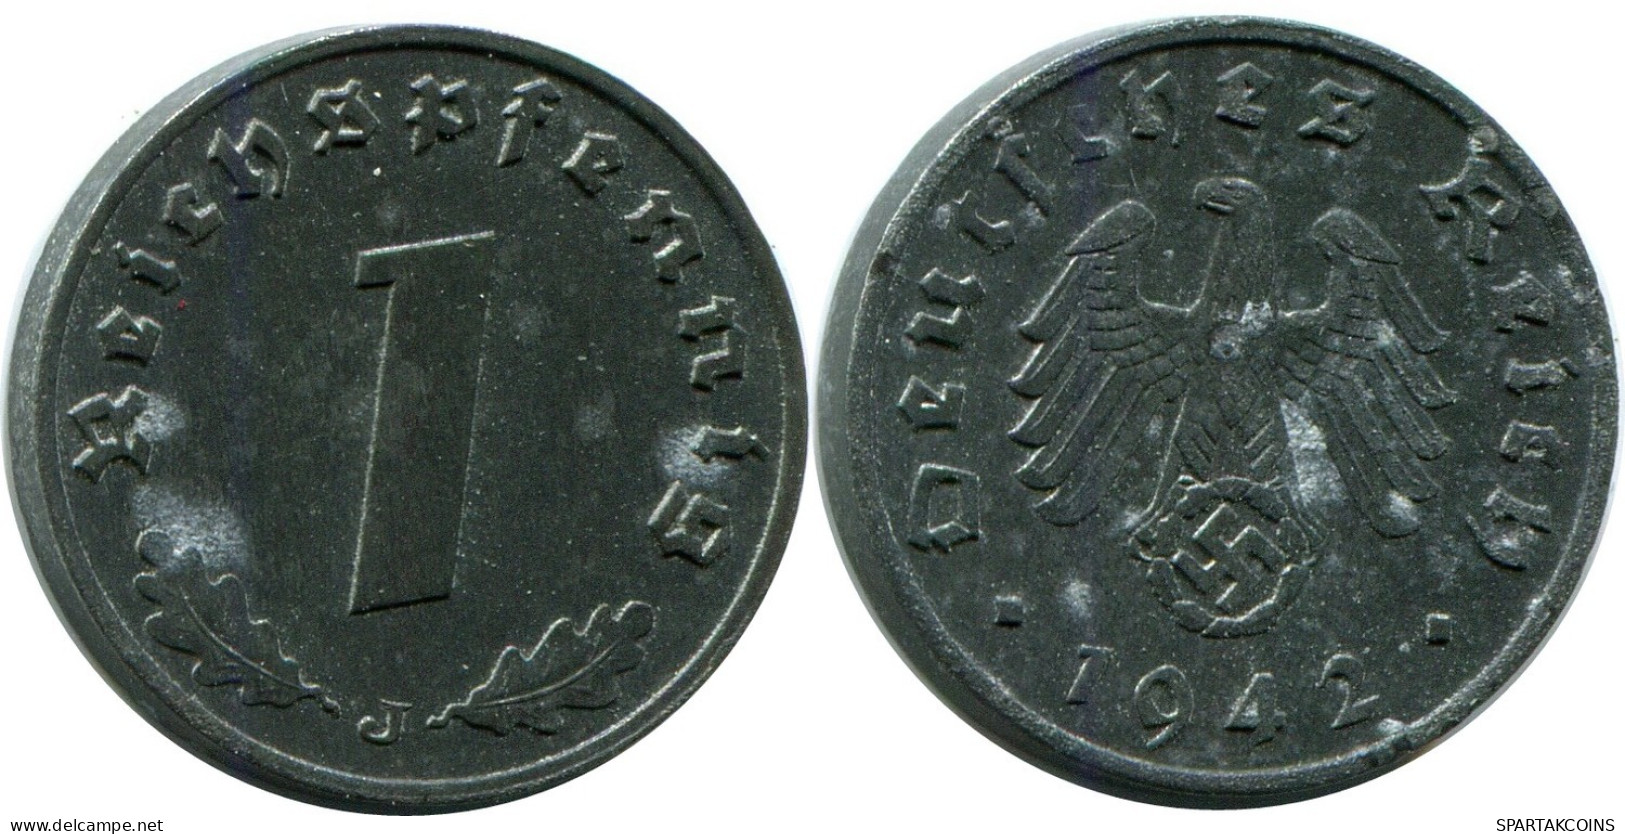 1 REICHSPFENNIG 1942 J GERMANY Coin #DB815.U.A - 1 Reichspfennig